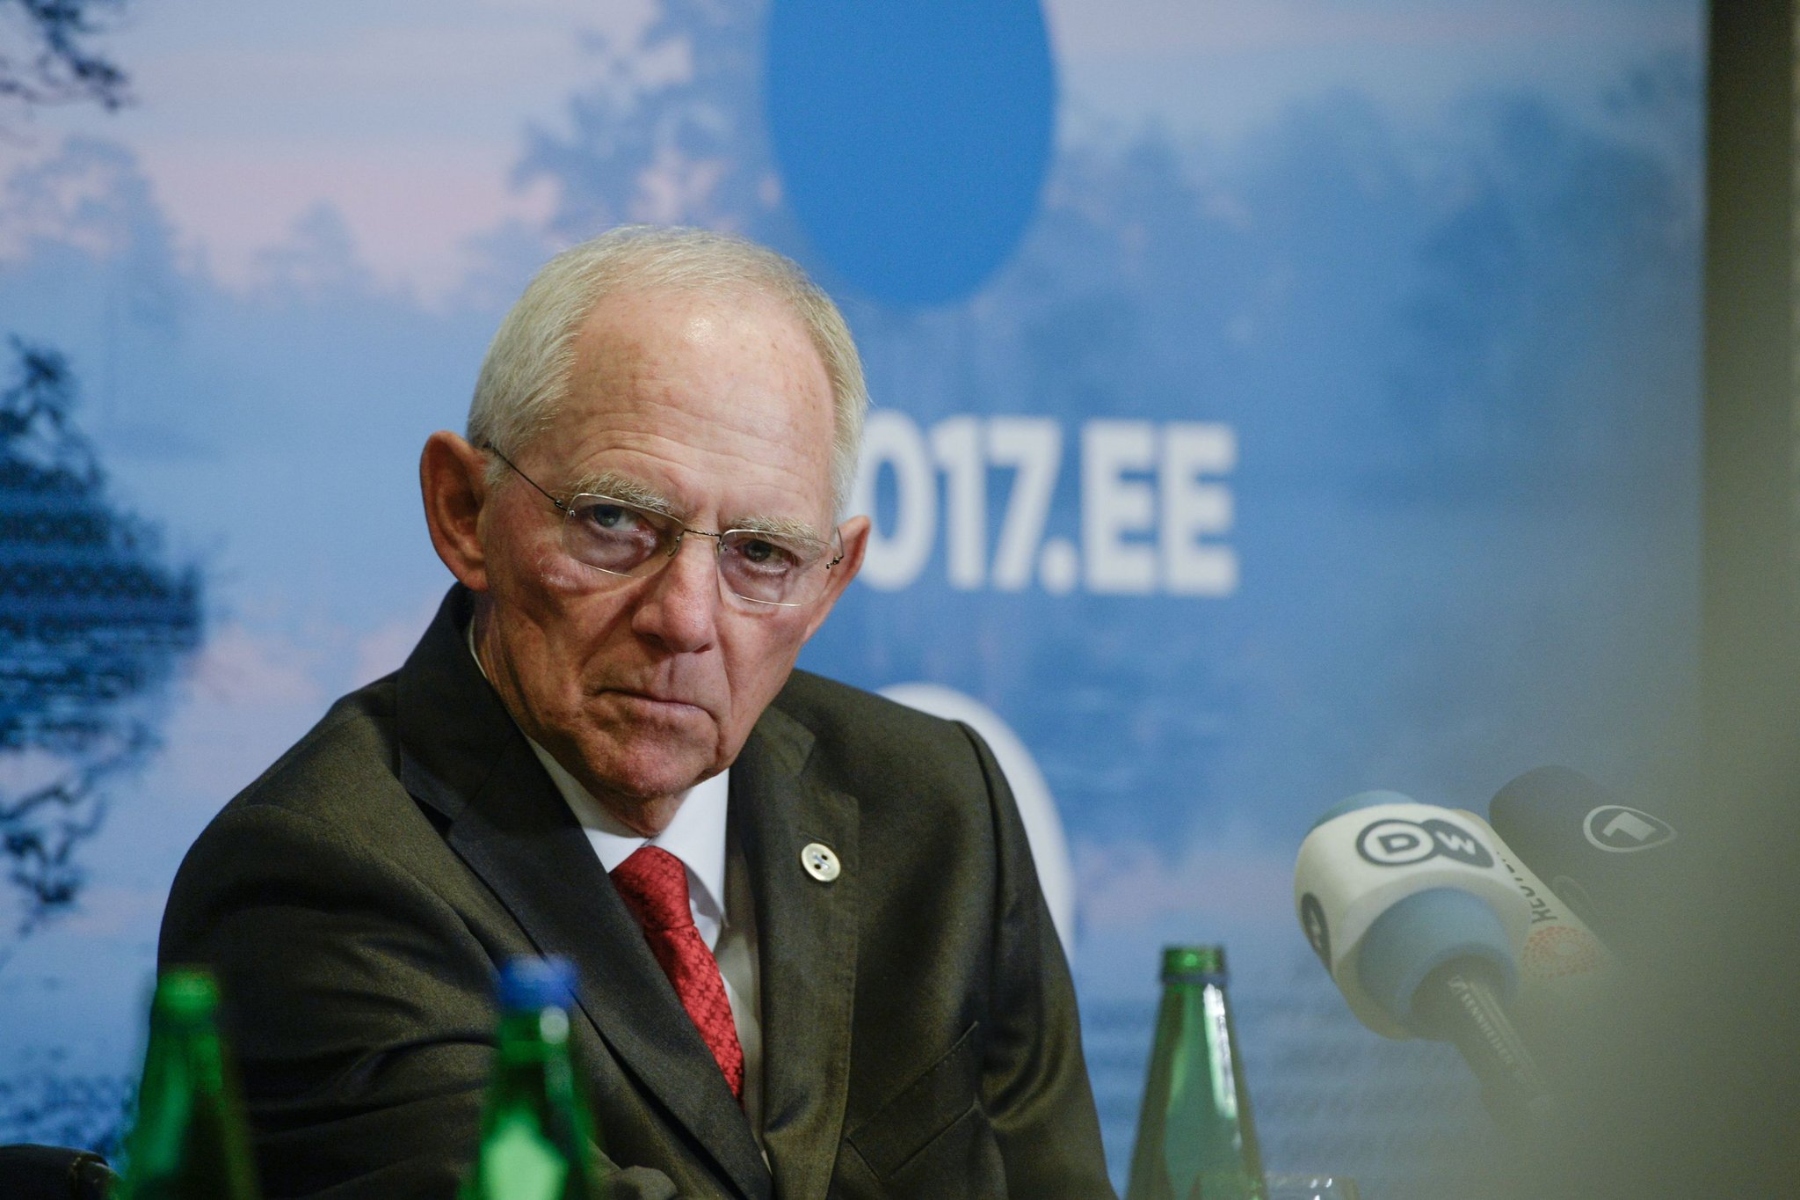 Βόλφγκανγκ Σόιμπλε: Πέθανε ο Γερμανός πρώην υπουργός Οικονομικών στα 81 του